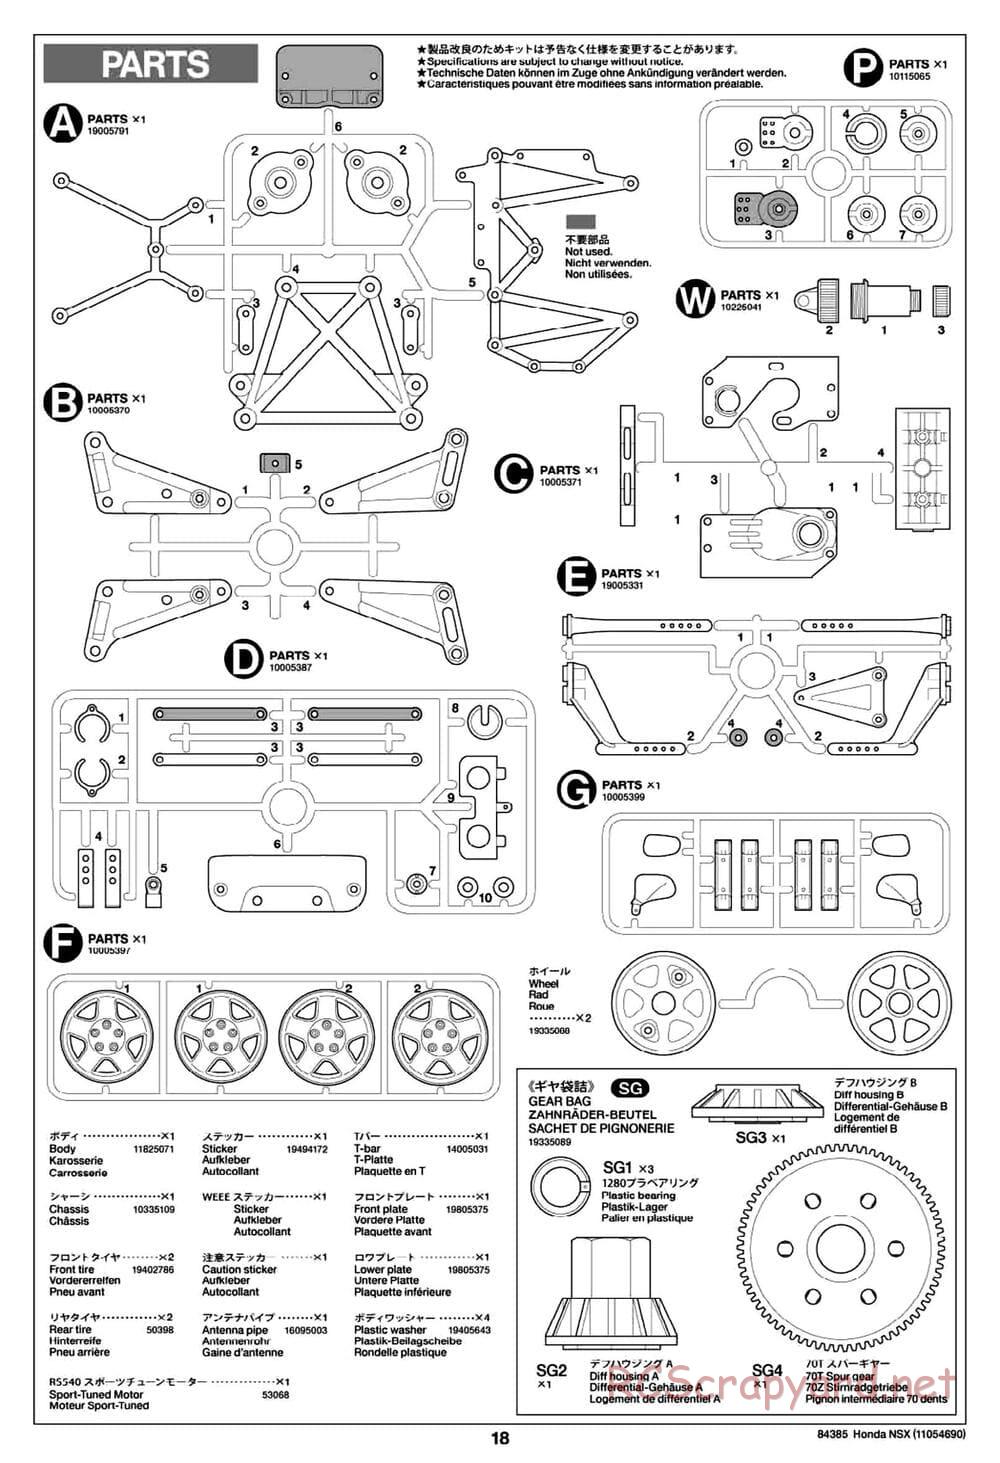 Tamiya - Honda NSX - Group-C Chassis - Manual - Page 18